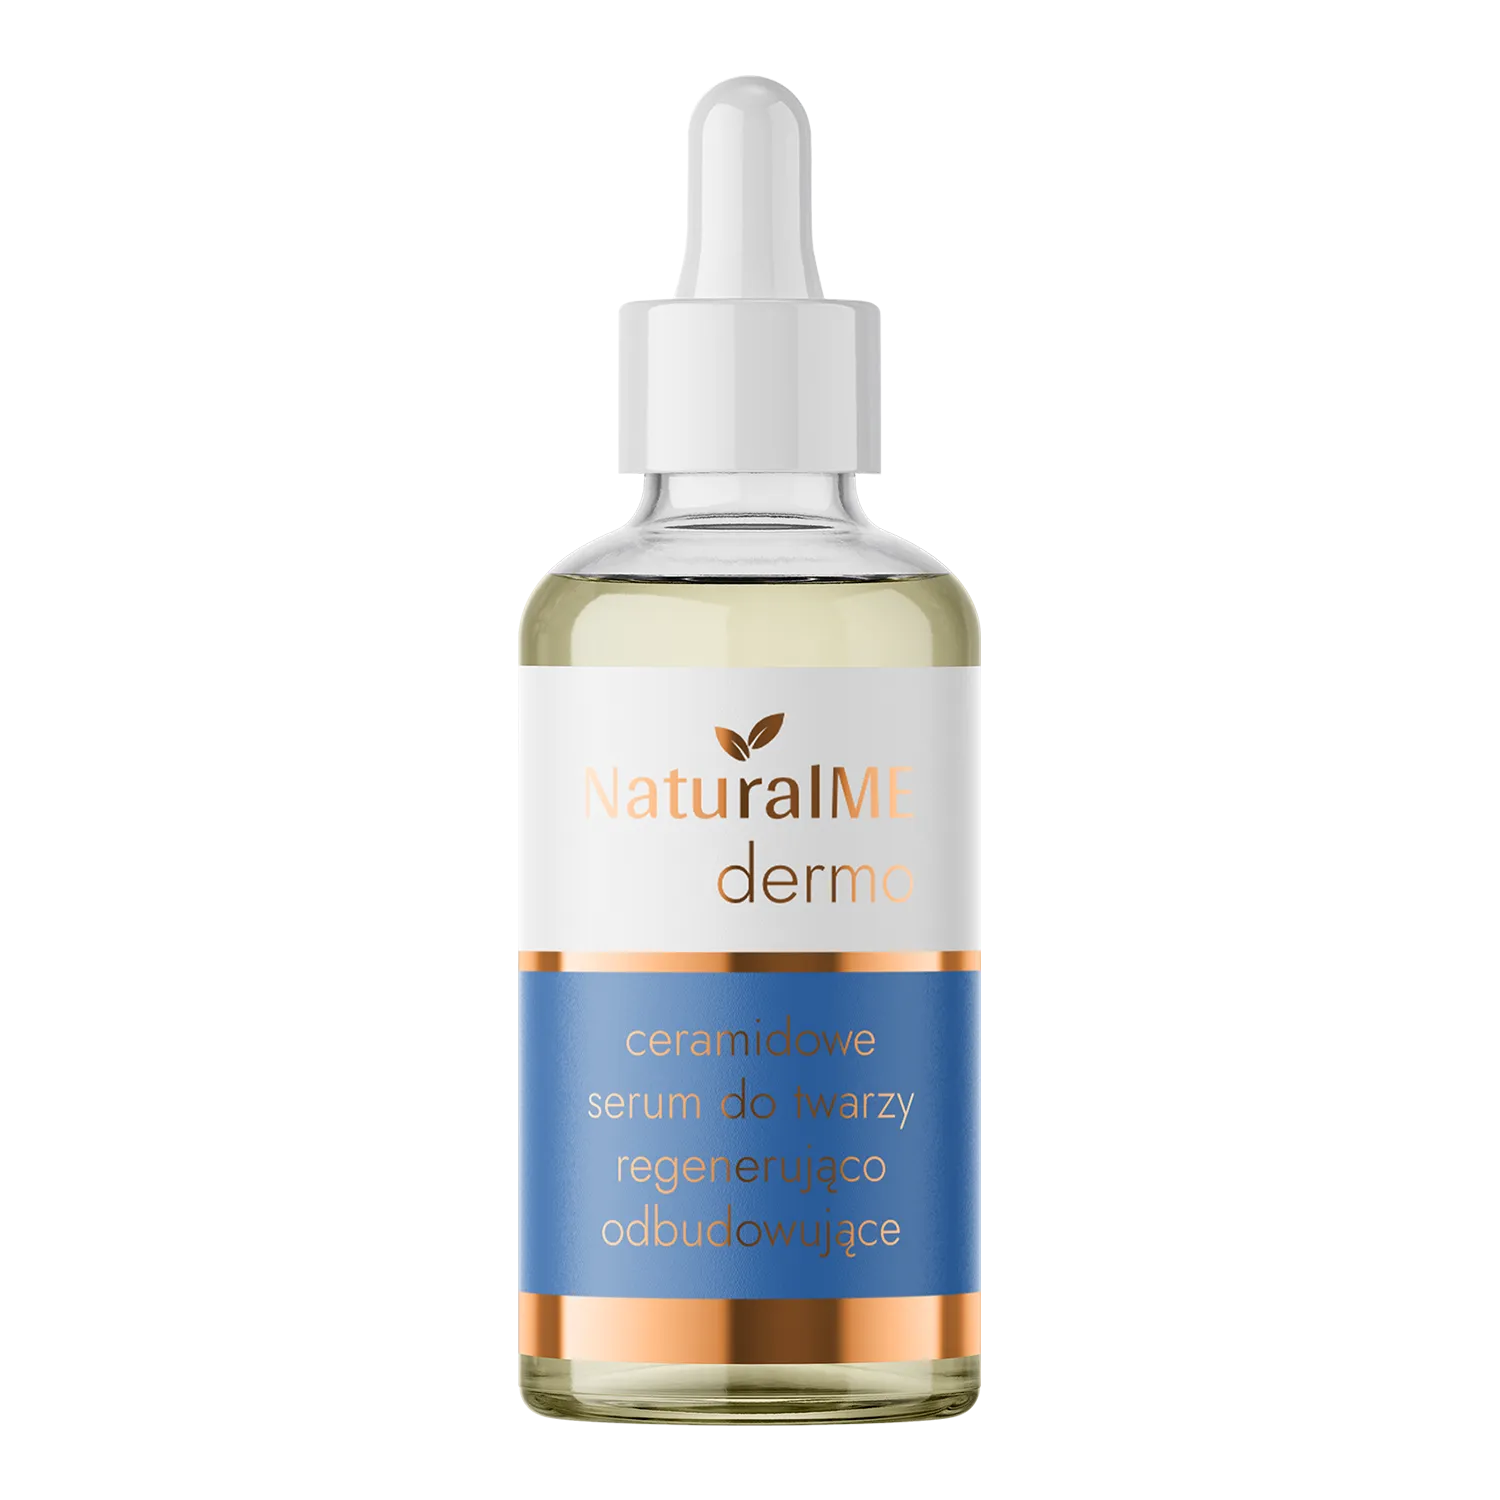 NaturalME Dermo ceramidowe serum do twarzy regenerująco-odbudowujące, 30 ml